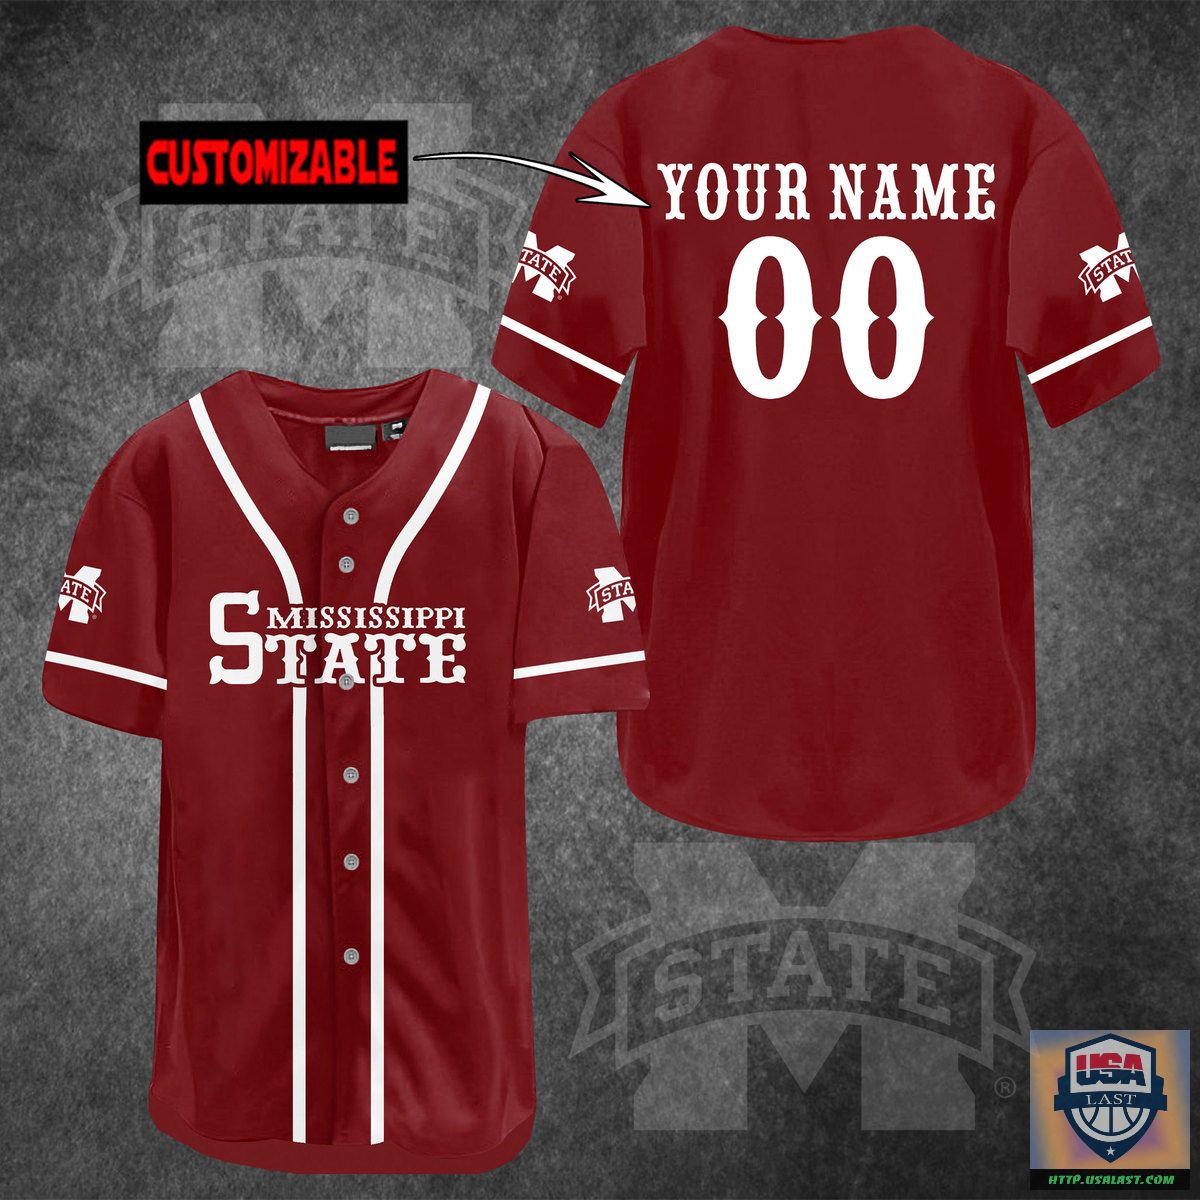 Mississippi State Bulldogs Personalized Baseball Jersey Shirt – Usalast